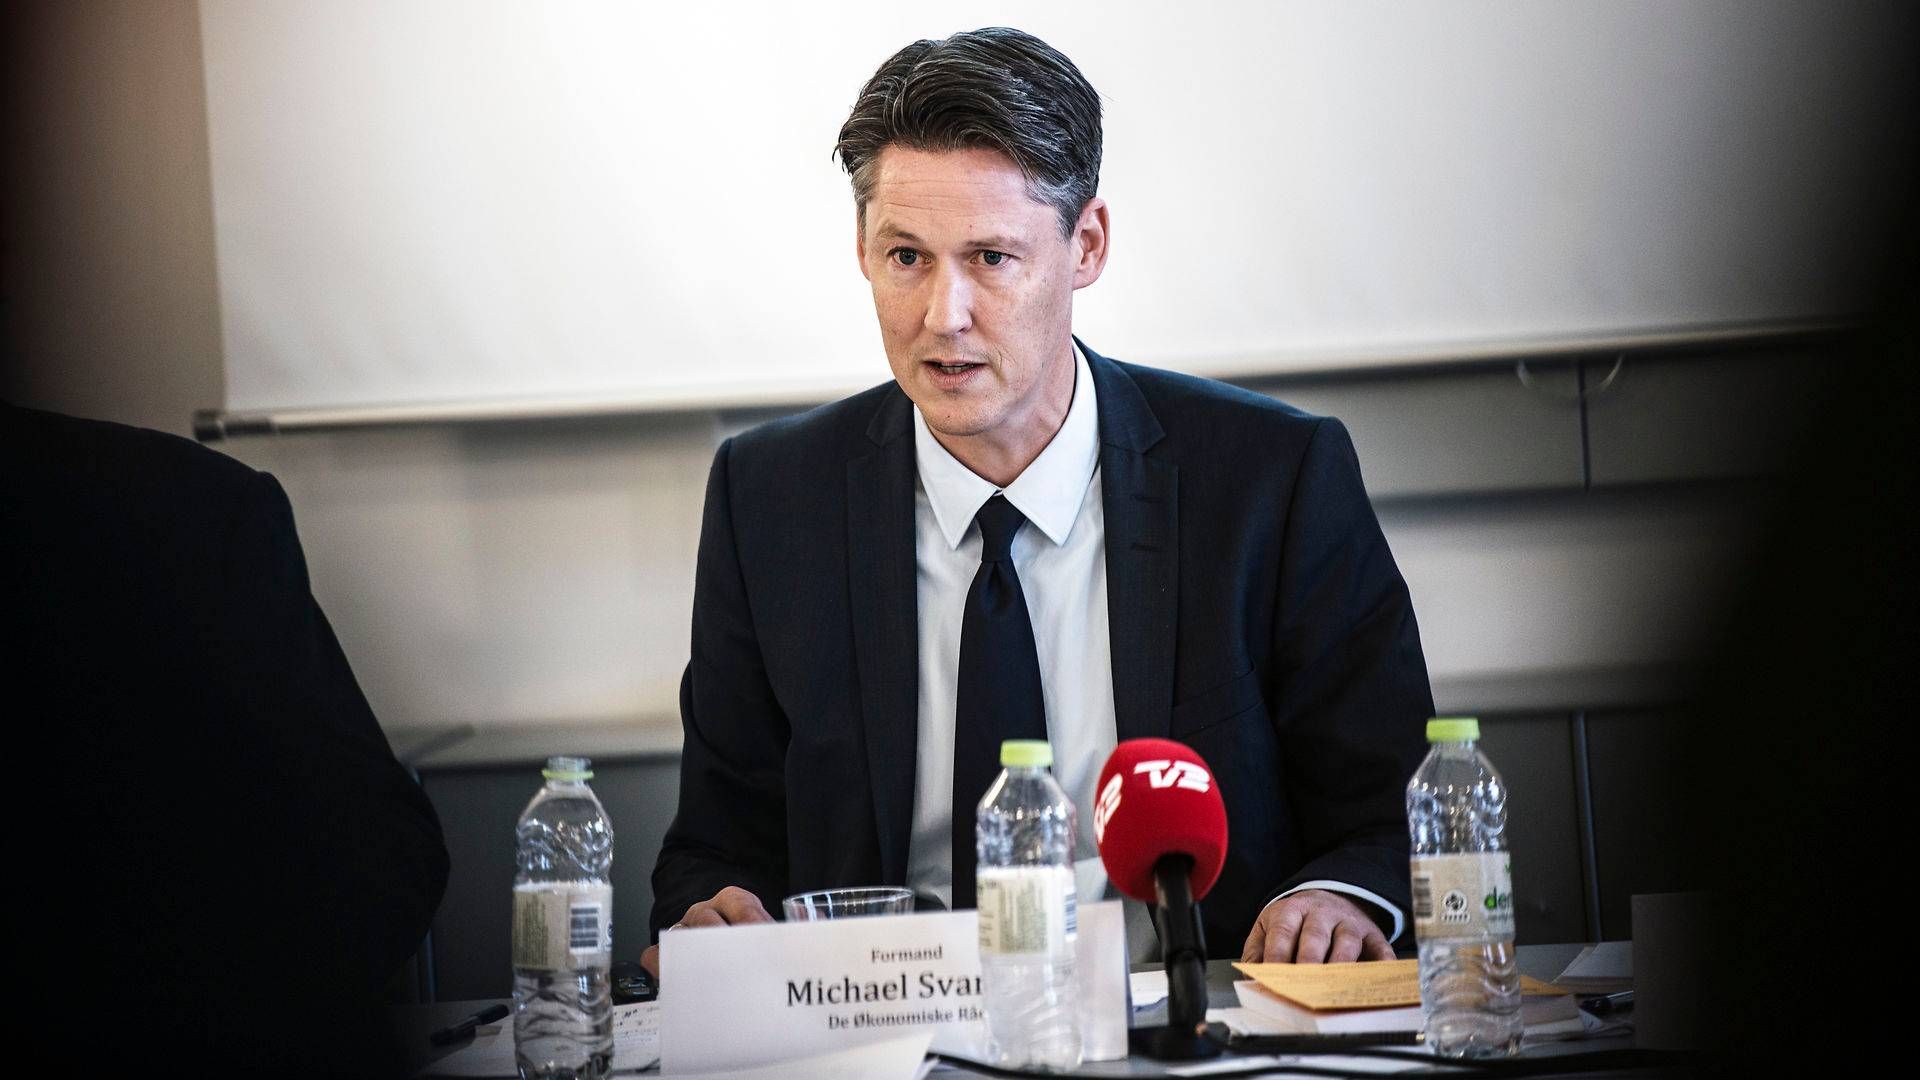 Økonom Michael Svarer, som ses på billedet, er en af de tre økonomer, som har fremlagt deres forslag til afvikling af hjælpepakkerne. | Foto: Casper Holmenlund Christensen/Jyllands-Posten/Ritzau Scanpix